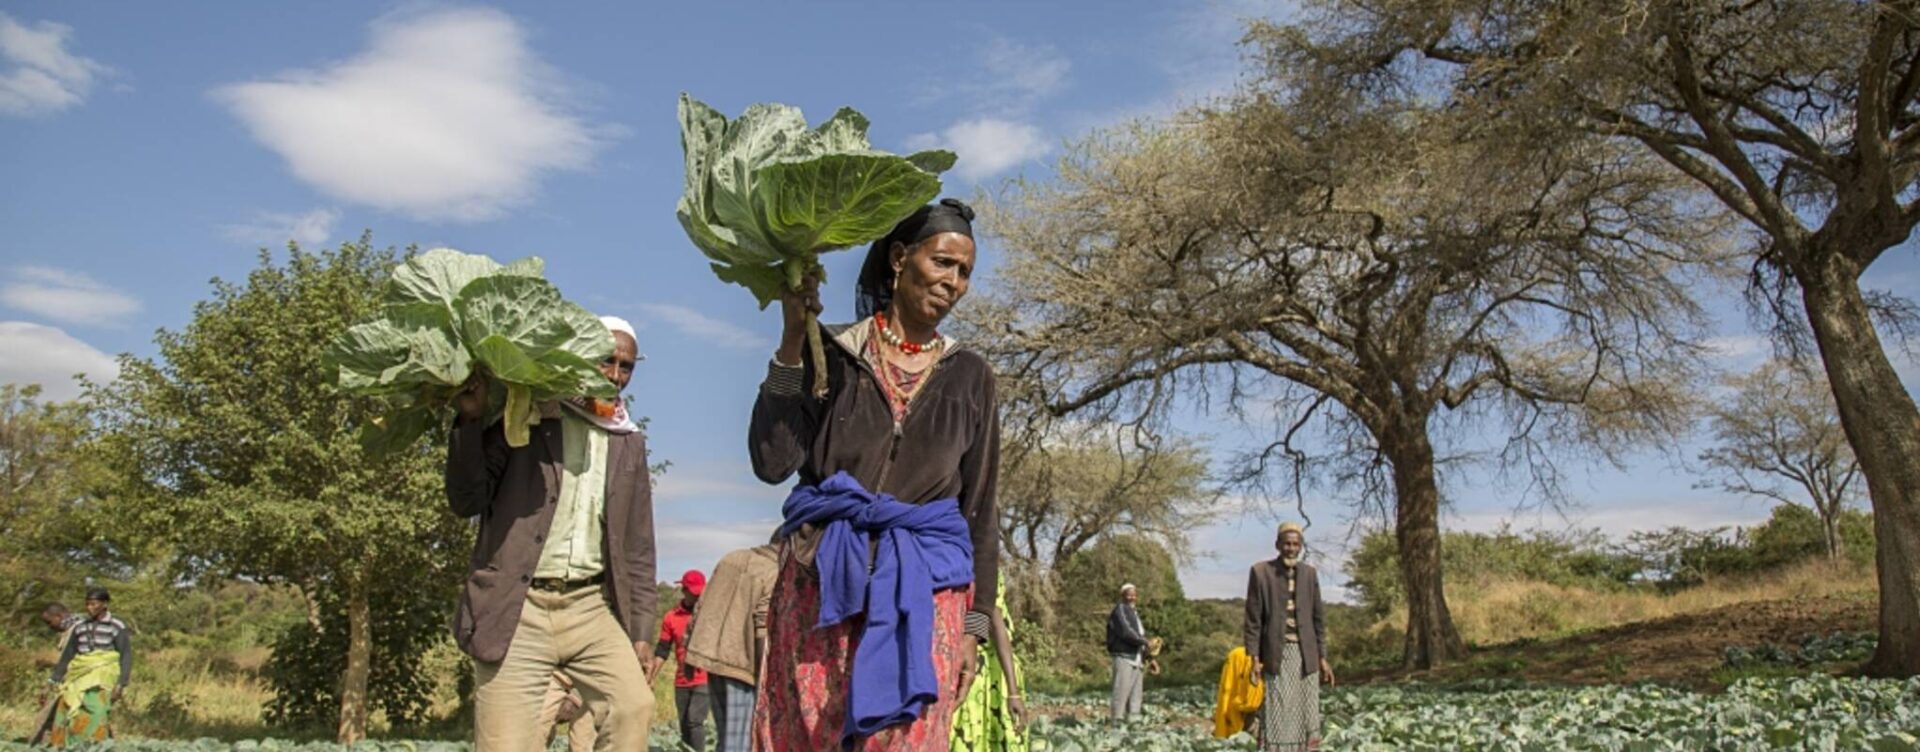 Caritas Suisse favorise l'accès des femmes au marché, notamment en Ethiopie | © Caritas Suisse